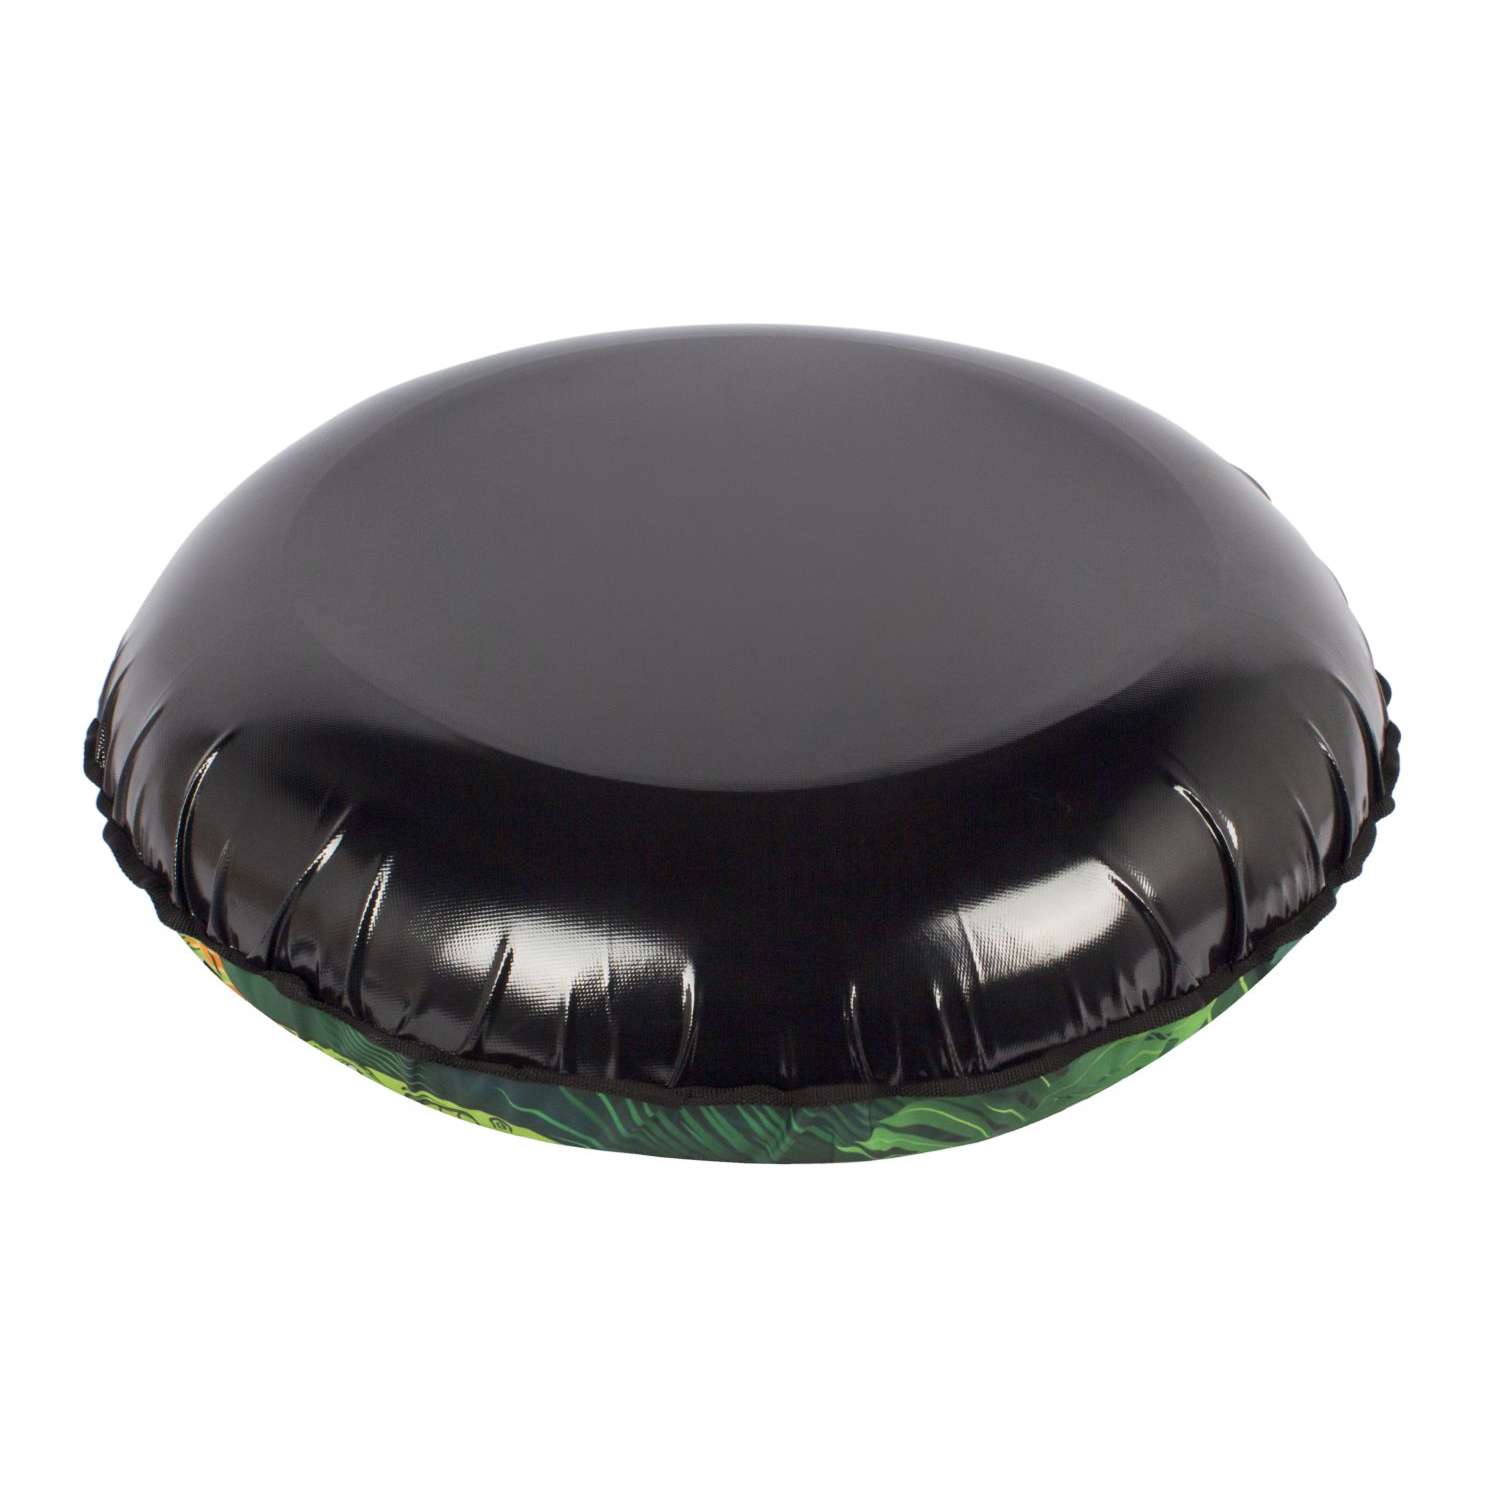 Тюбинг-ватрушка DINOSAURS 90см Snowstorm зеленый с черным - фото 4